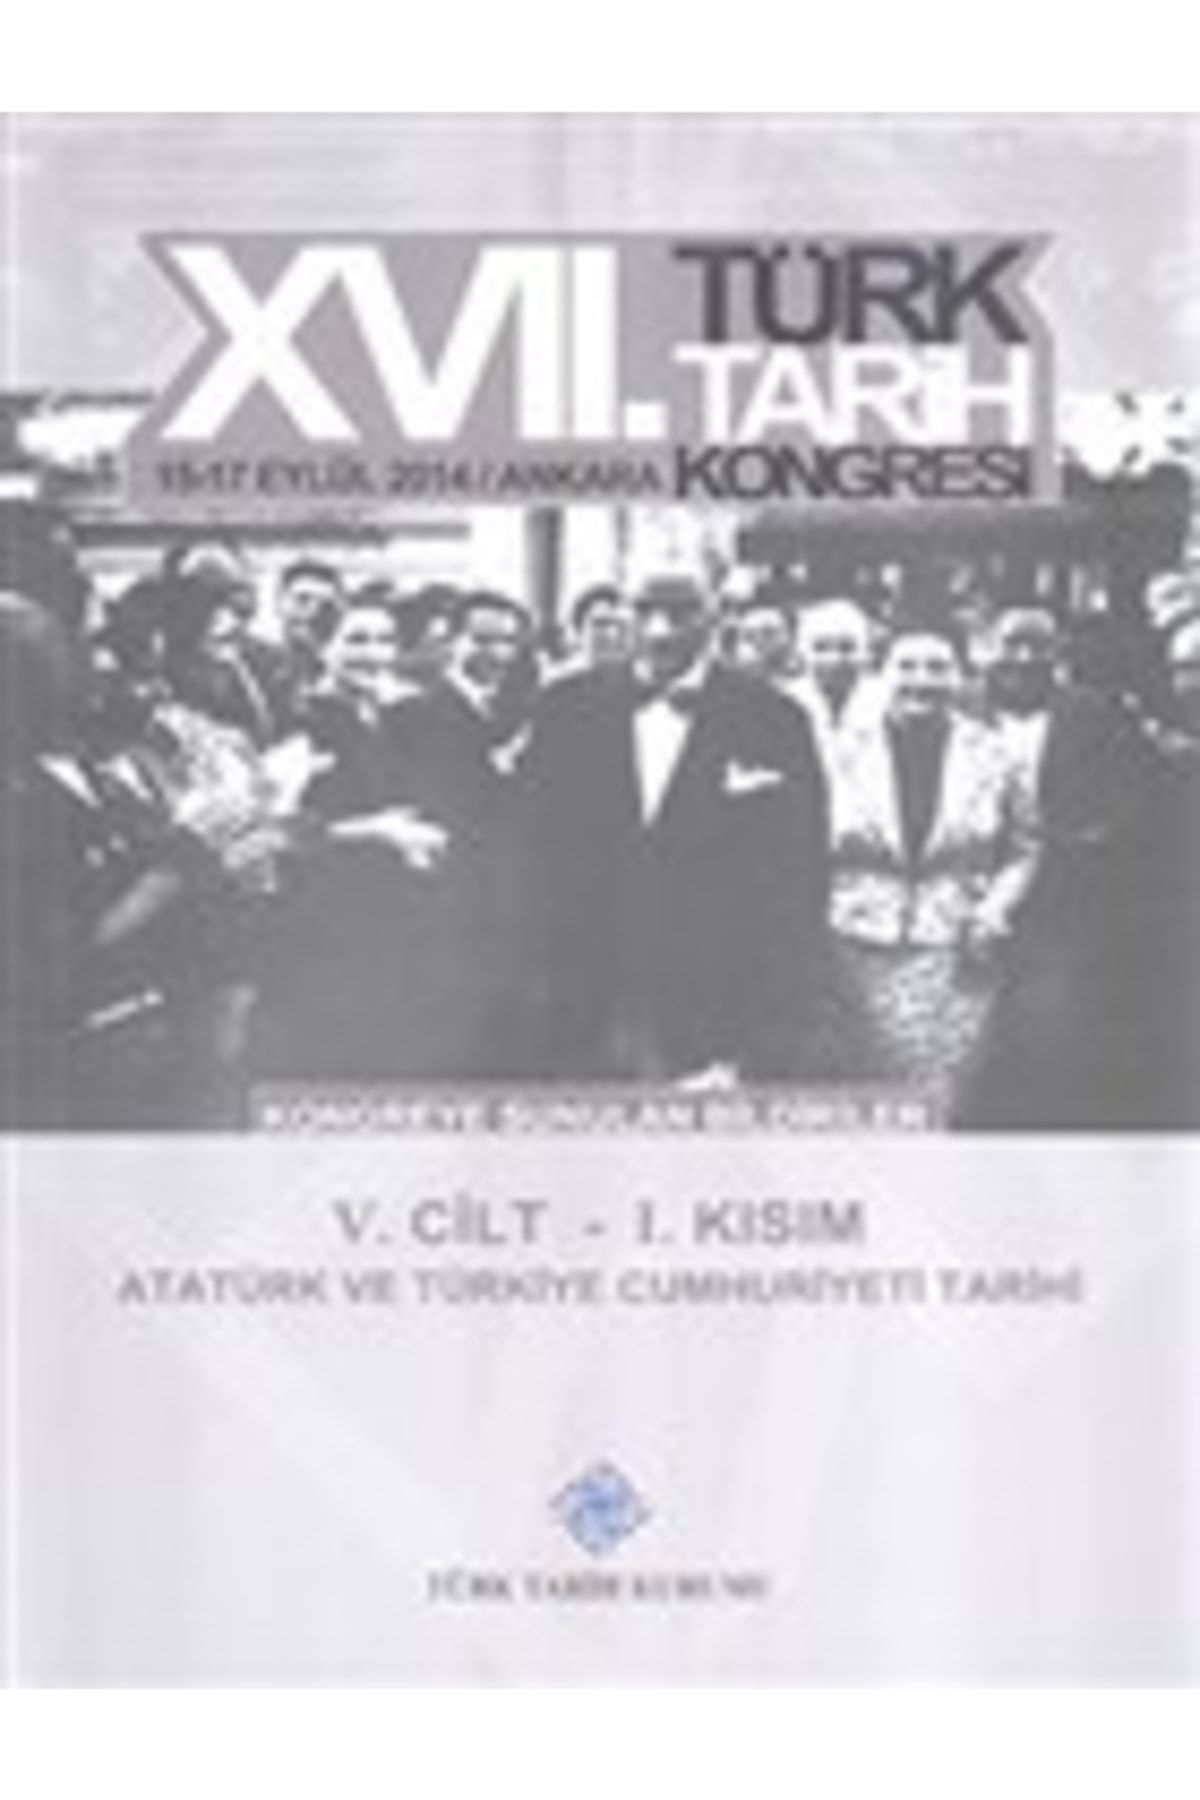 Türk Tarih Kurumu Yayınları 17. Türk Tarih Kongresi 5. Cilt 1. Kısım - Atatürk Ve Türkiye Cumhuriyeti Tarihi